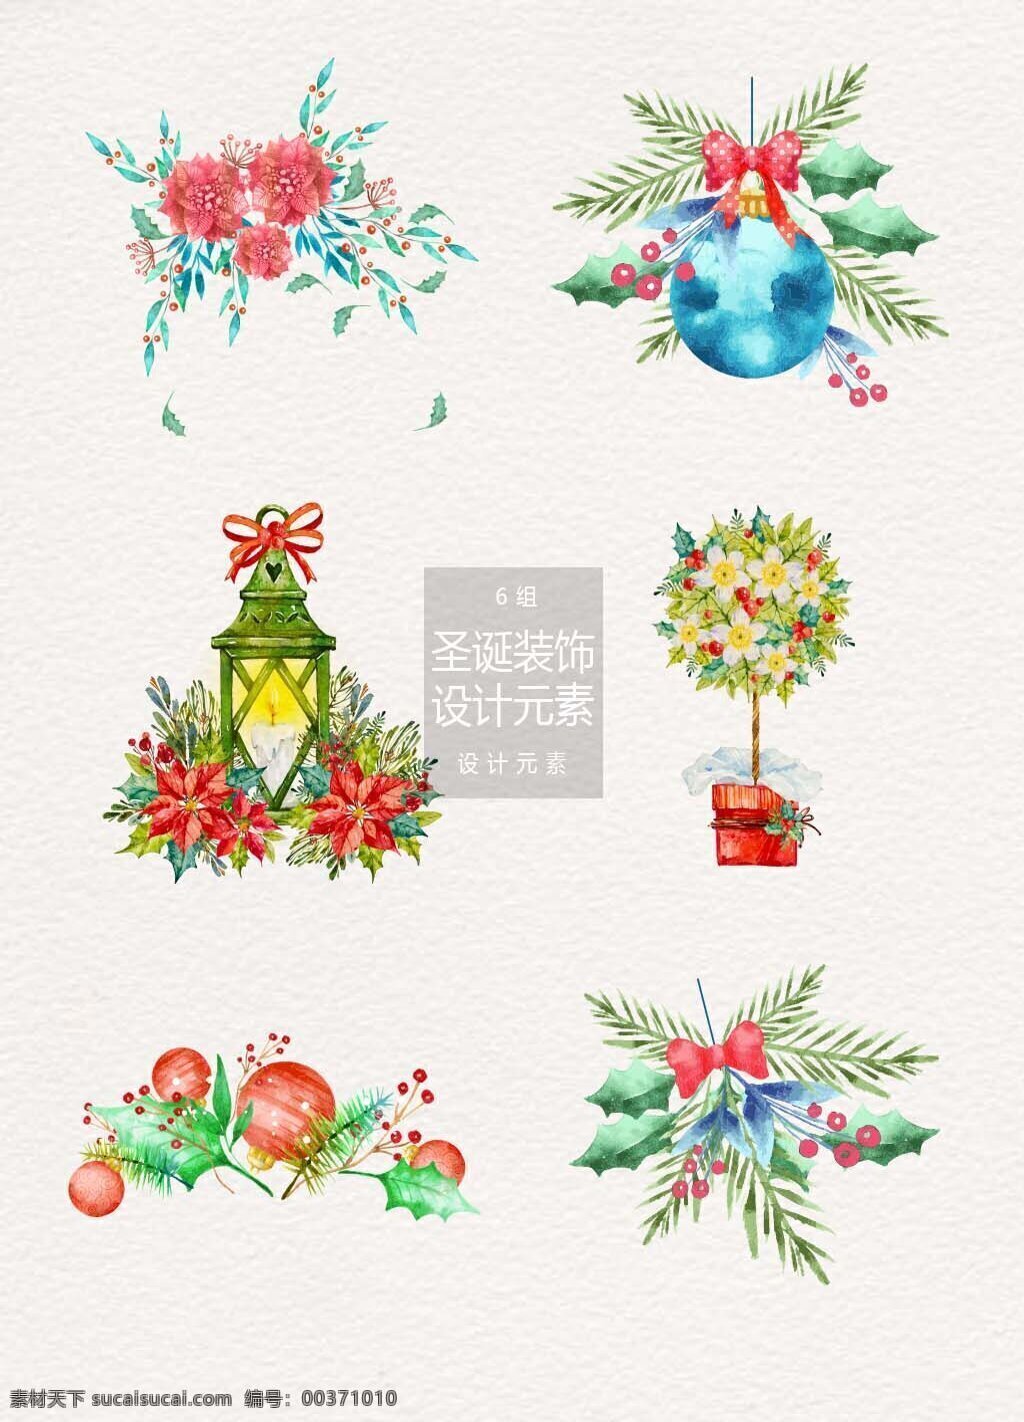 圣诞 水彩 植物 装饰设计 元素 圣诞节 灯 盆栽 冬天 冬季 设计元素 水彩植物 圣诞装饰 油灯 圣诞球